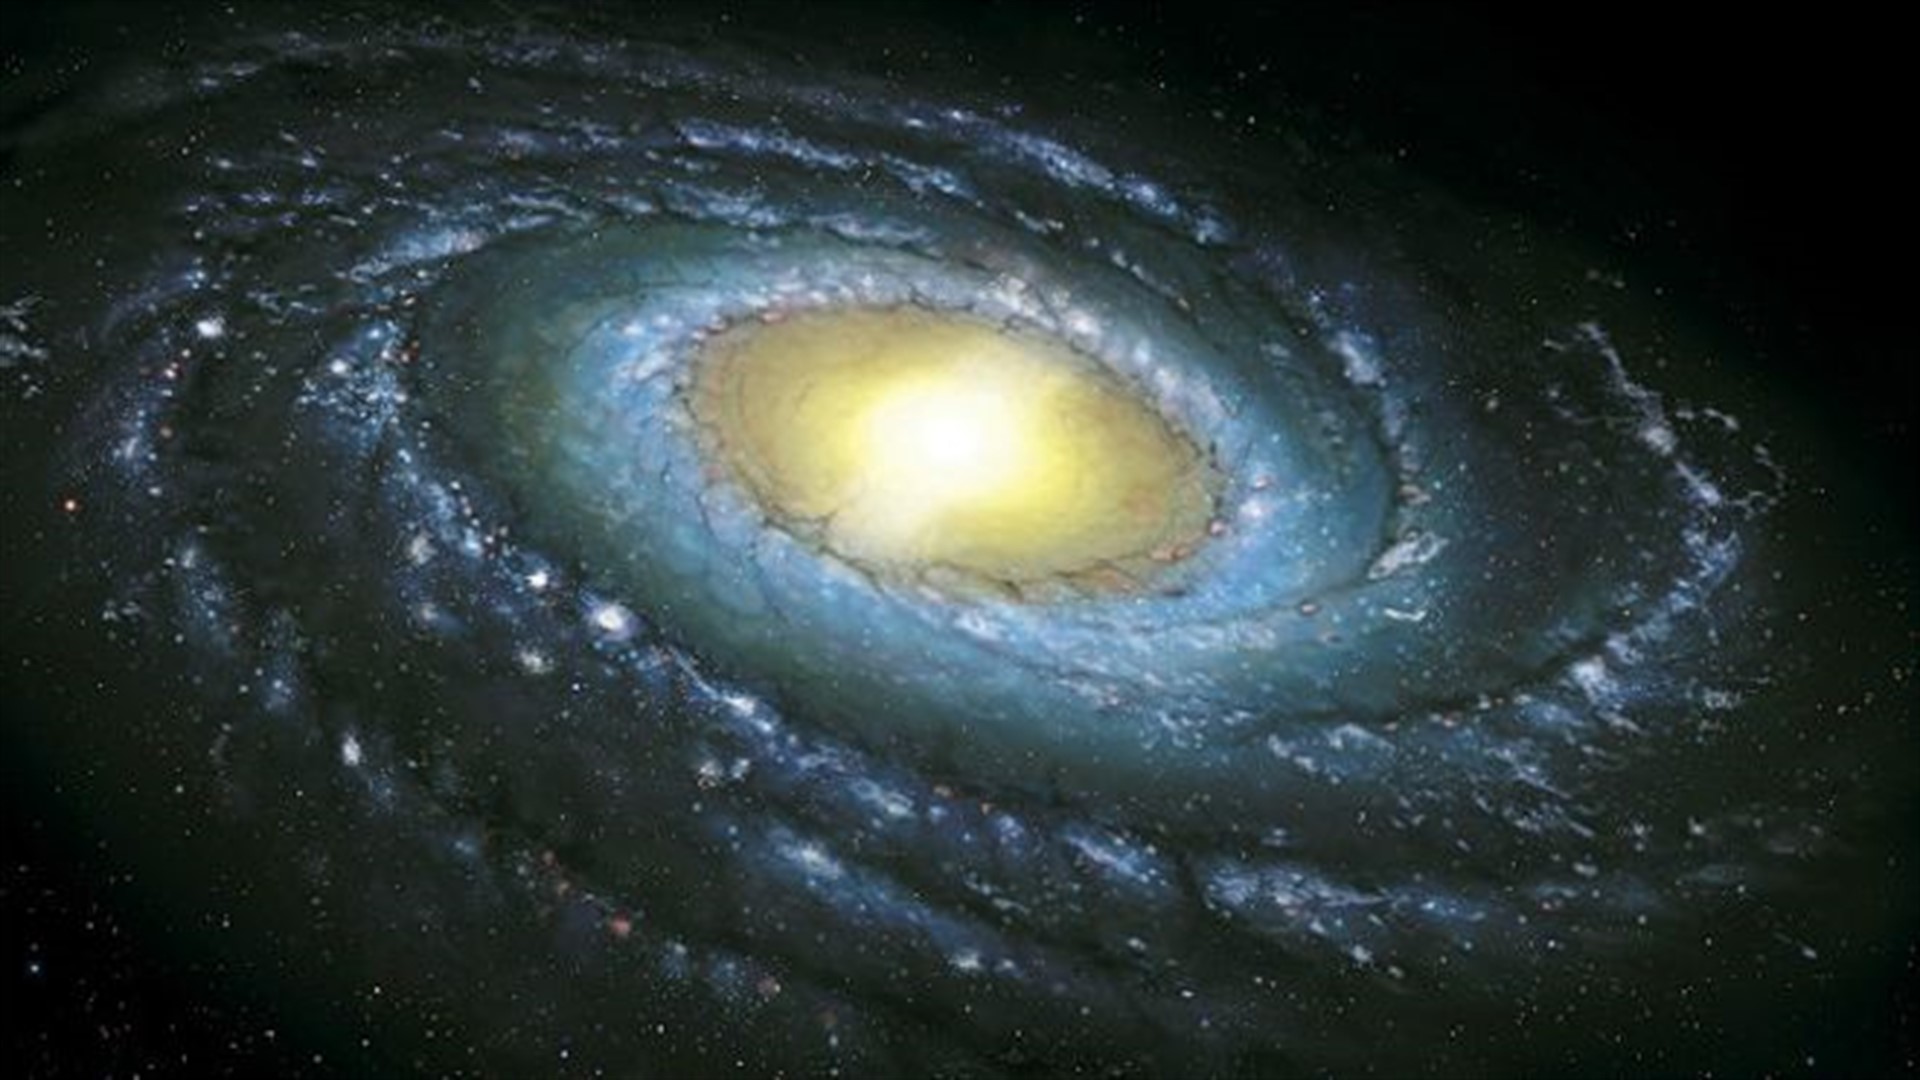 Млечный путь расположение. Наша Галактика Млечный путь. Галактика Млечный путь Солнечная система. Наша Солнечная система в галактике Млечный путь. Солнце в галактике Млечный путь.